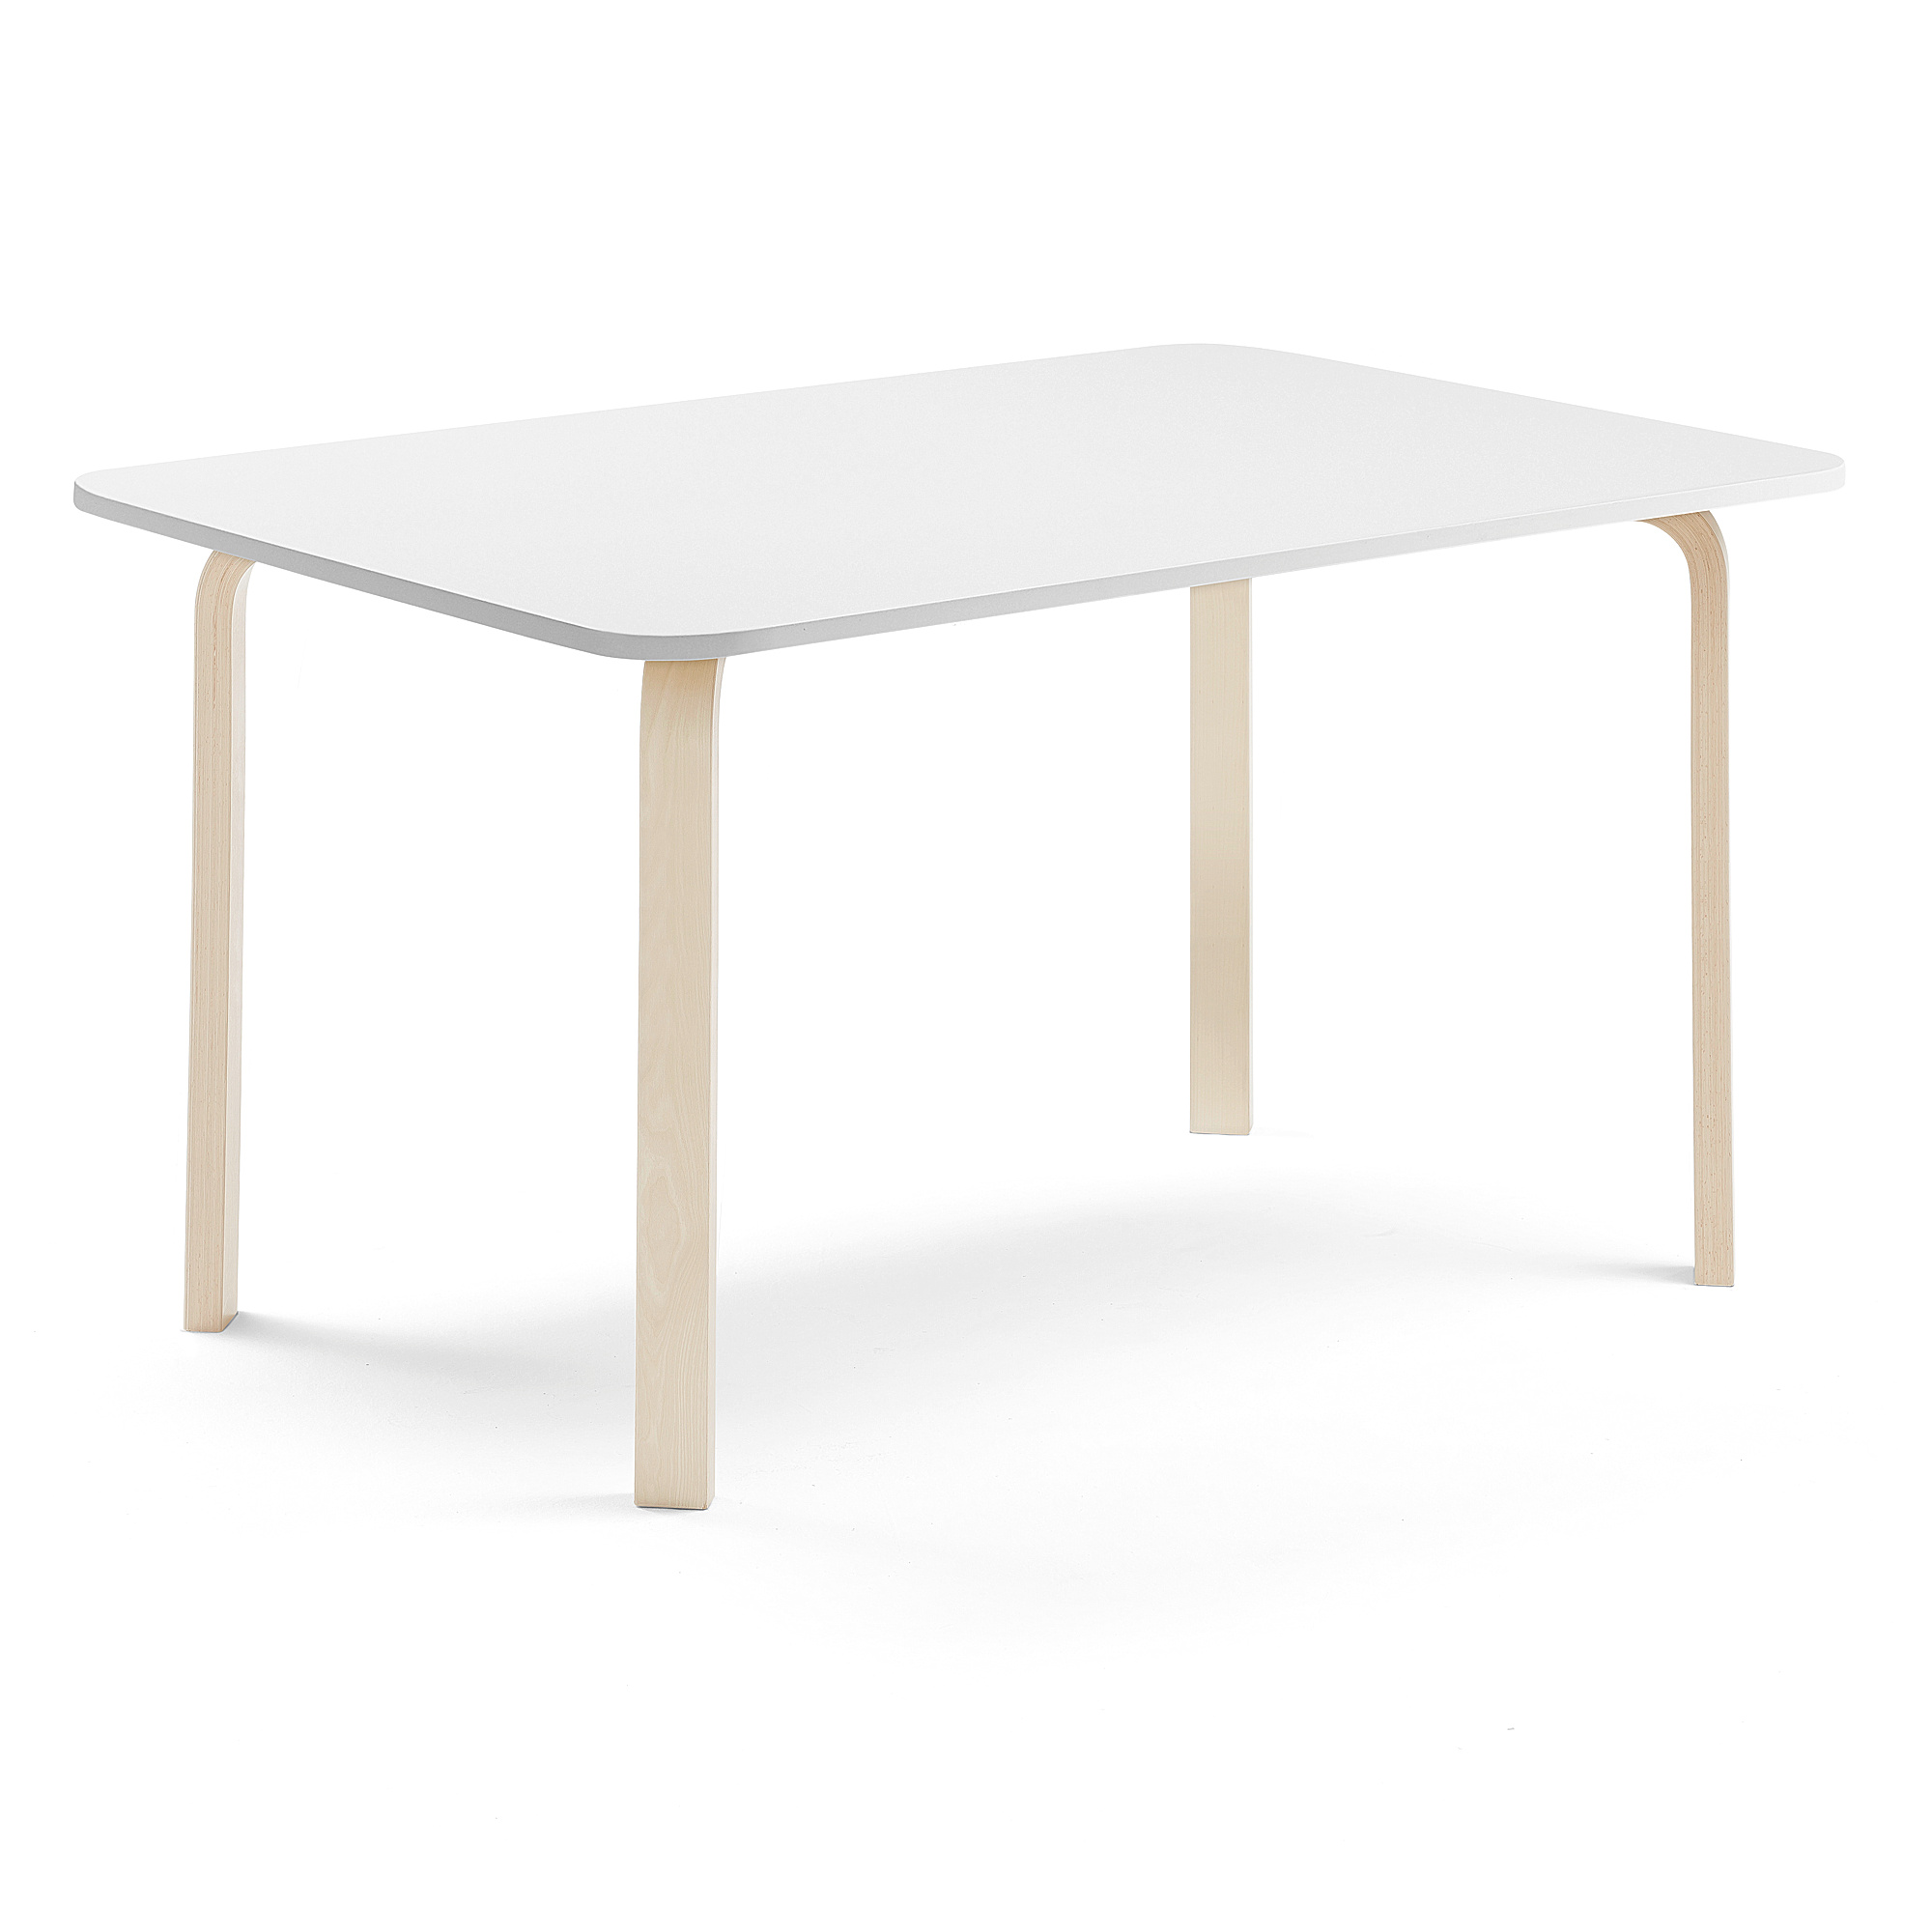 Stůl ELTON, 1800x700x710 mm, bříza, akustická HPL deska, bílá